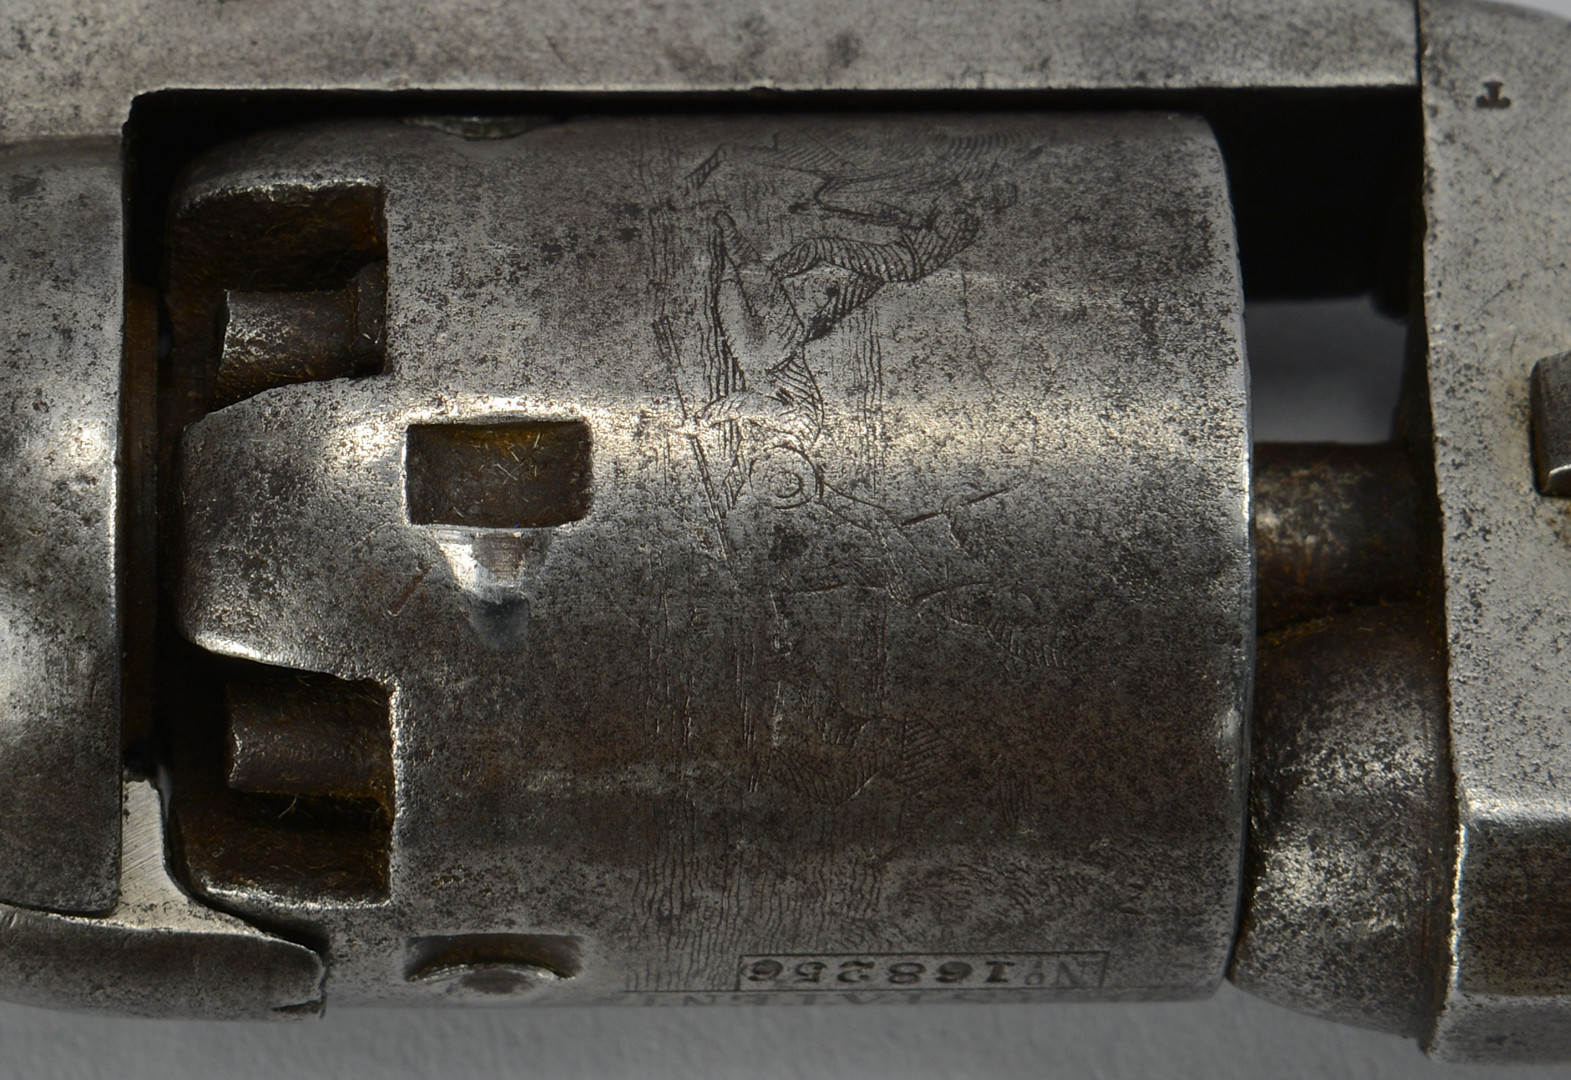 Lot 116: Colt Model 1849 Pocket Revolver, 1860